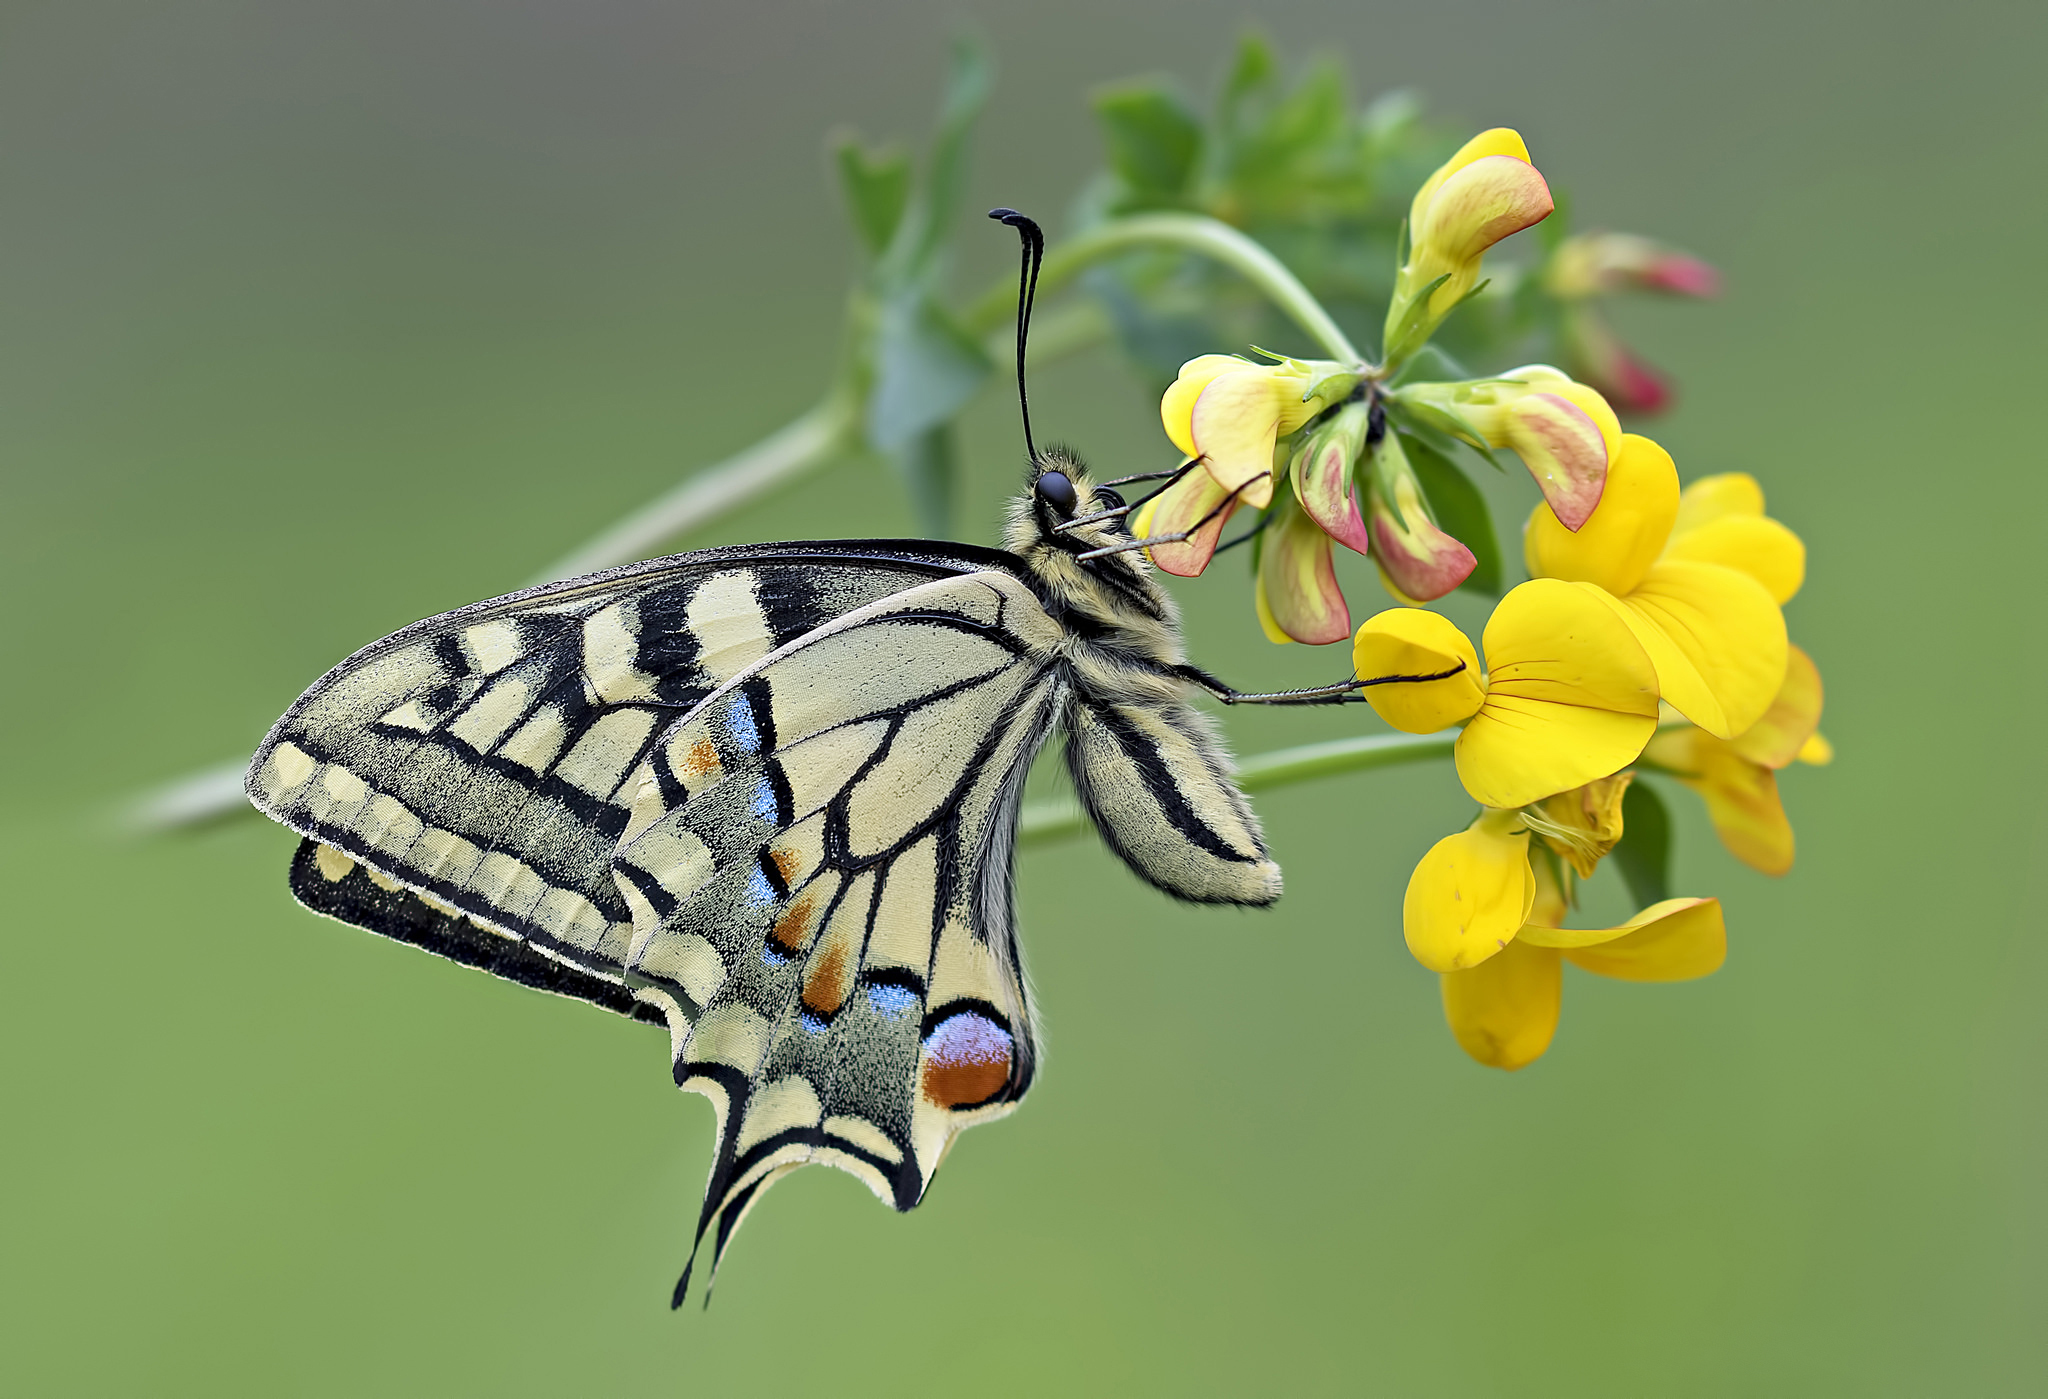 Descarga gratuita de fondo de pantalla para móvil de Animales, Flor, De Cerca, Insecto, Mariposa, Flor Amarilla.